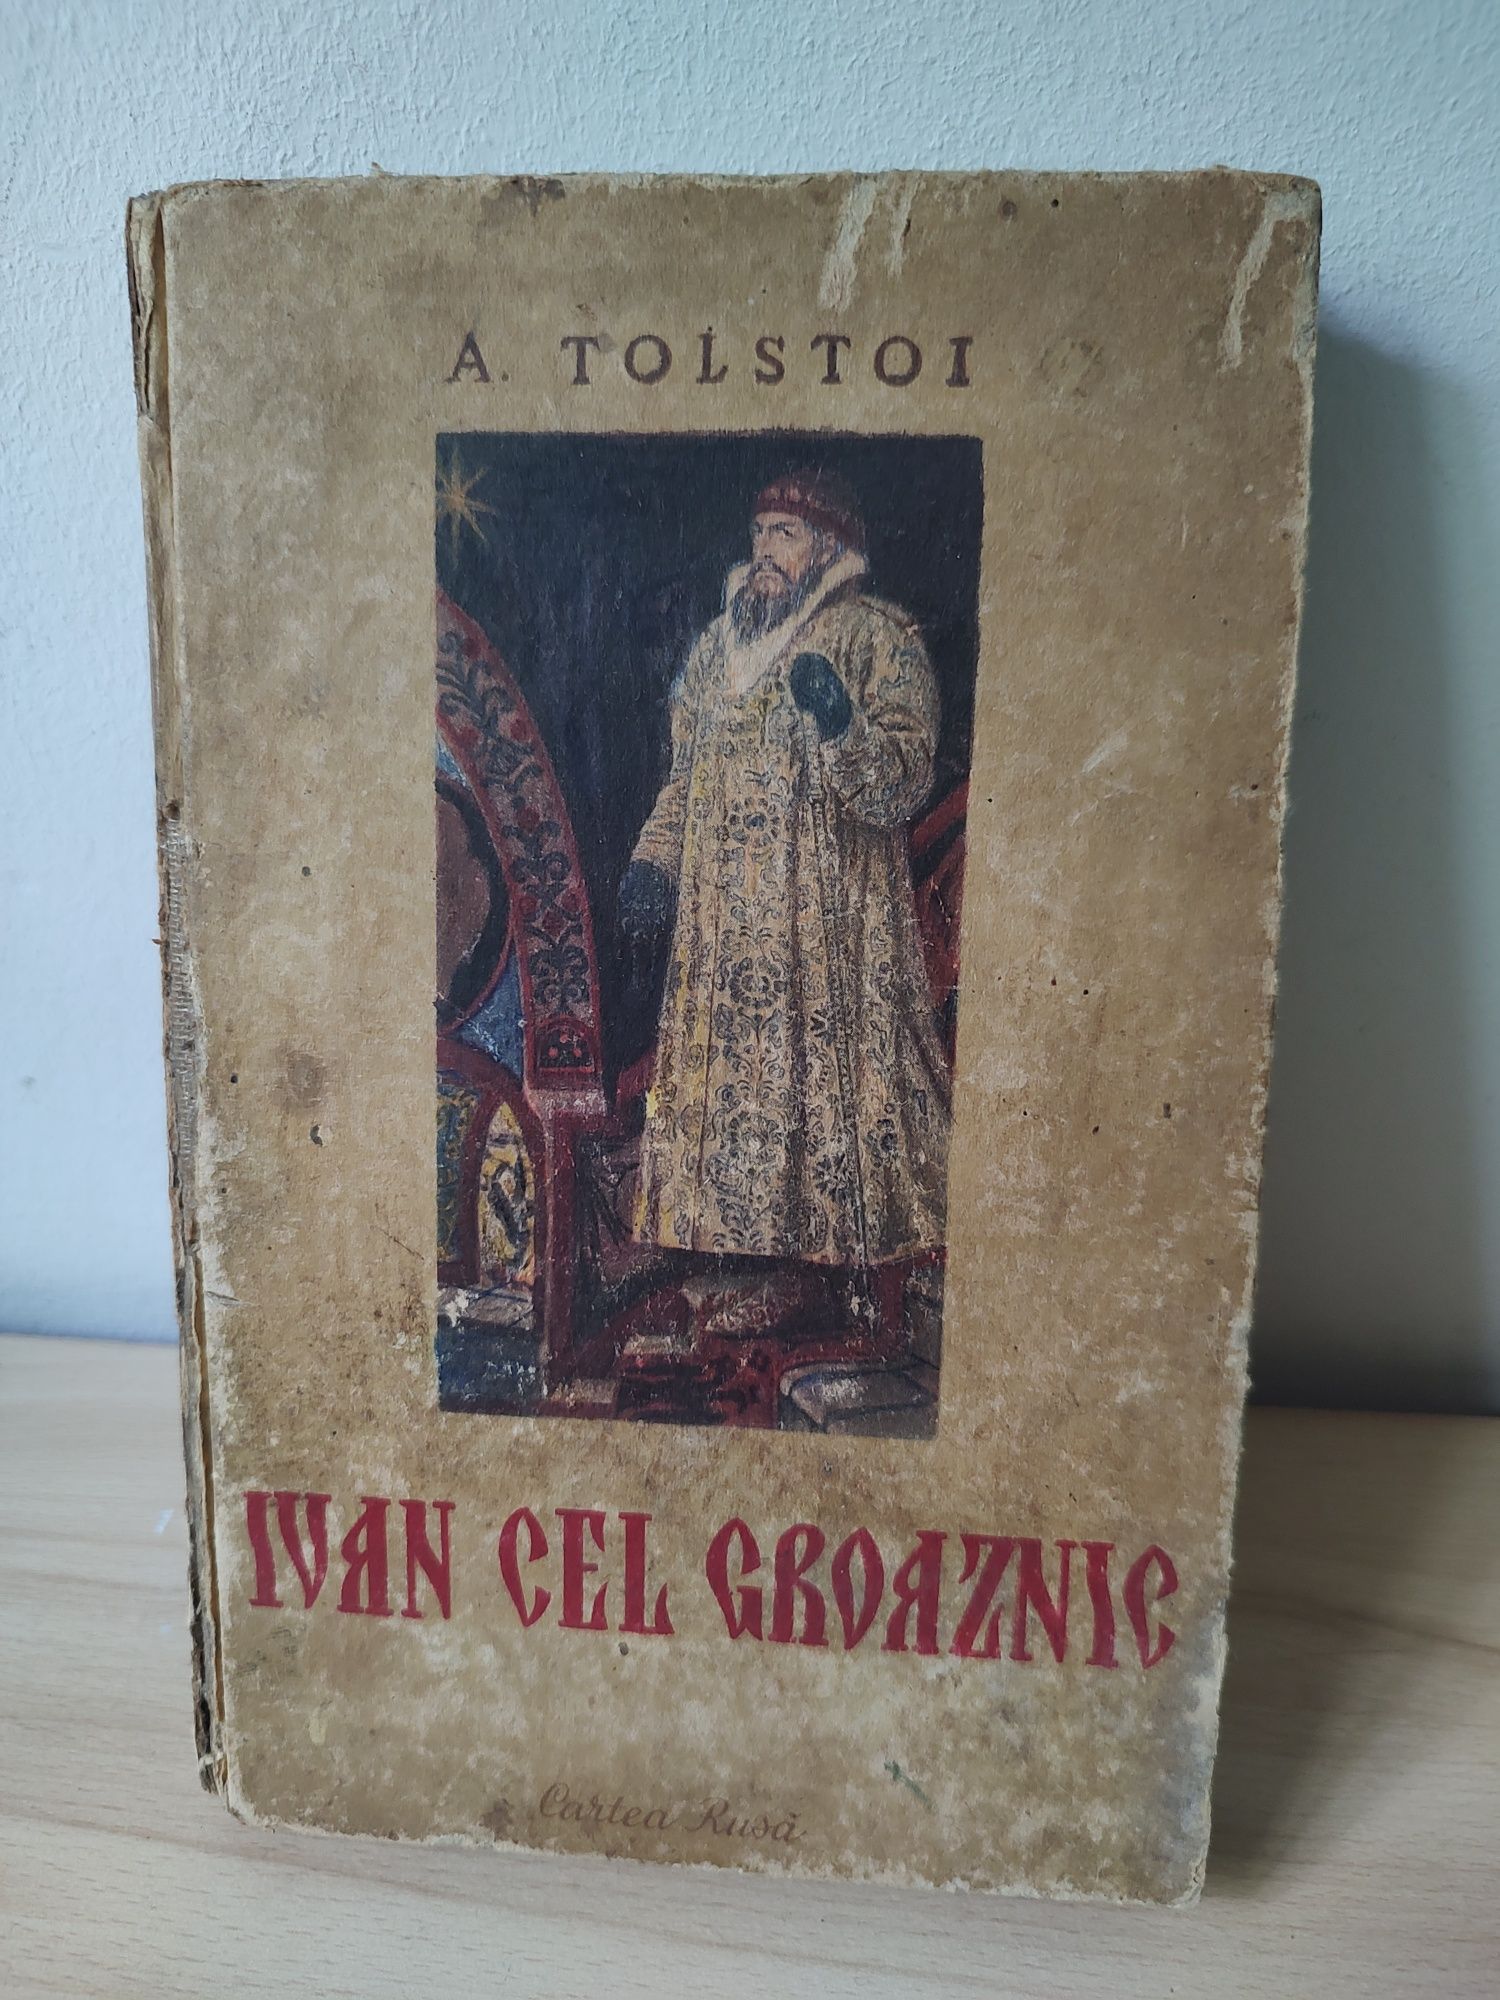 IVAN CEL GROAZNIC, A. Tolstoi - carte de colectie